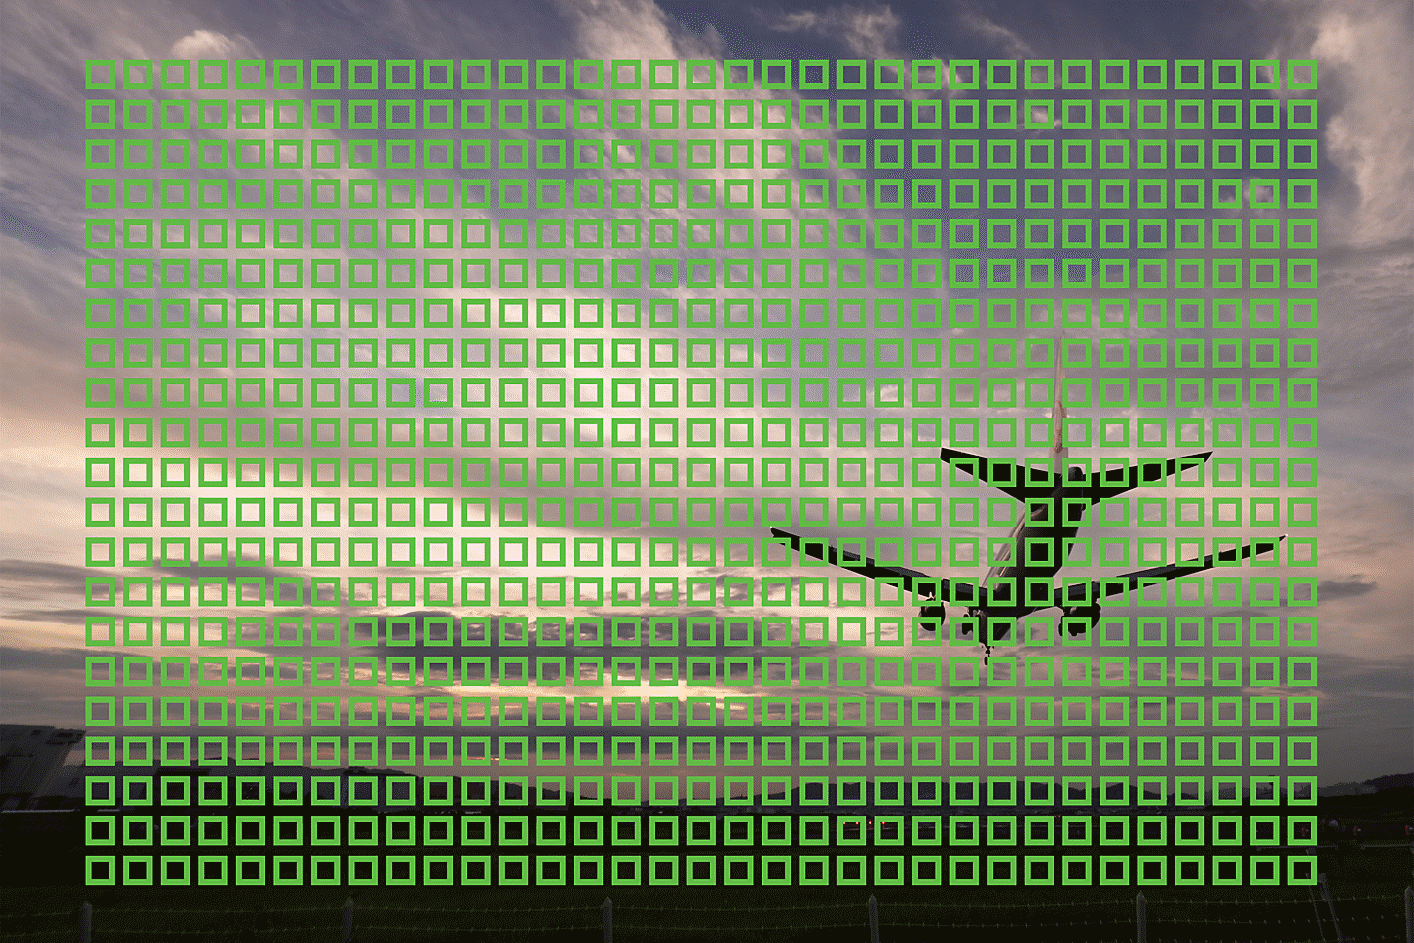 Immagine di esempio di un aereo in volo con quadratini che mostrano i 693 punti AF nell'immagine